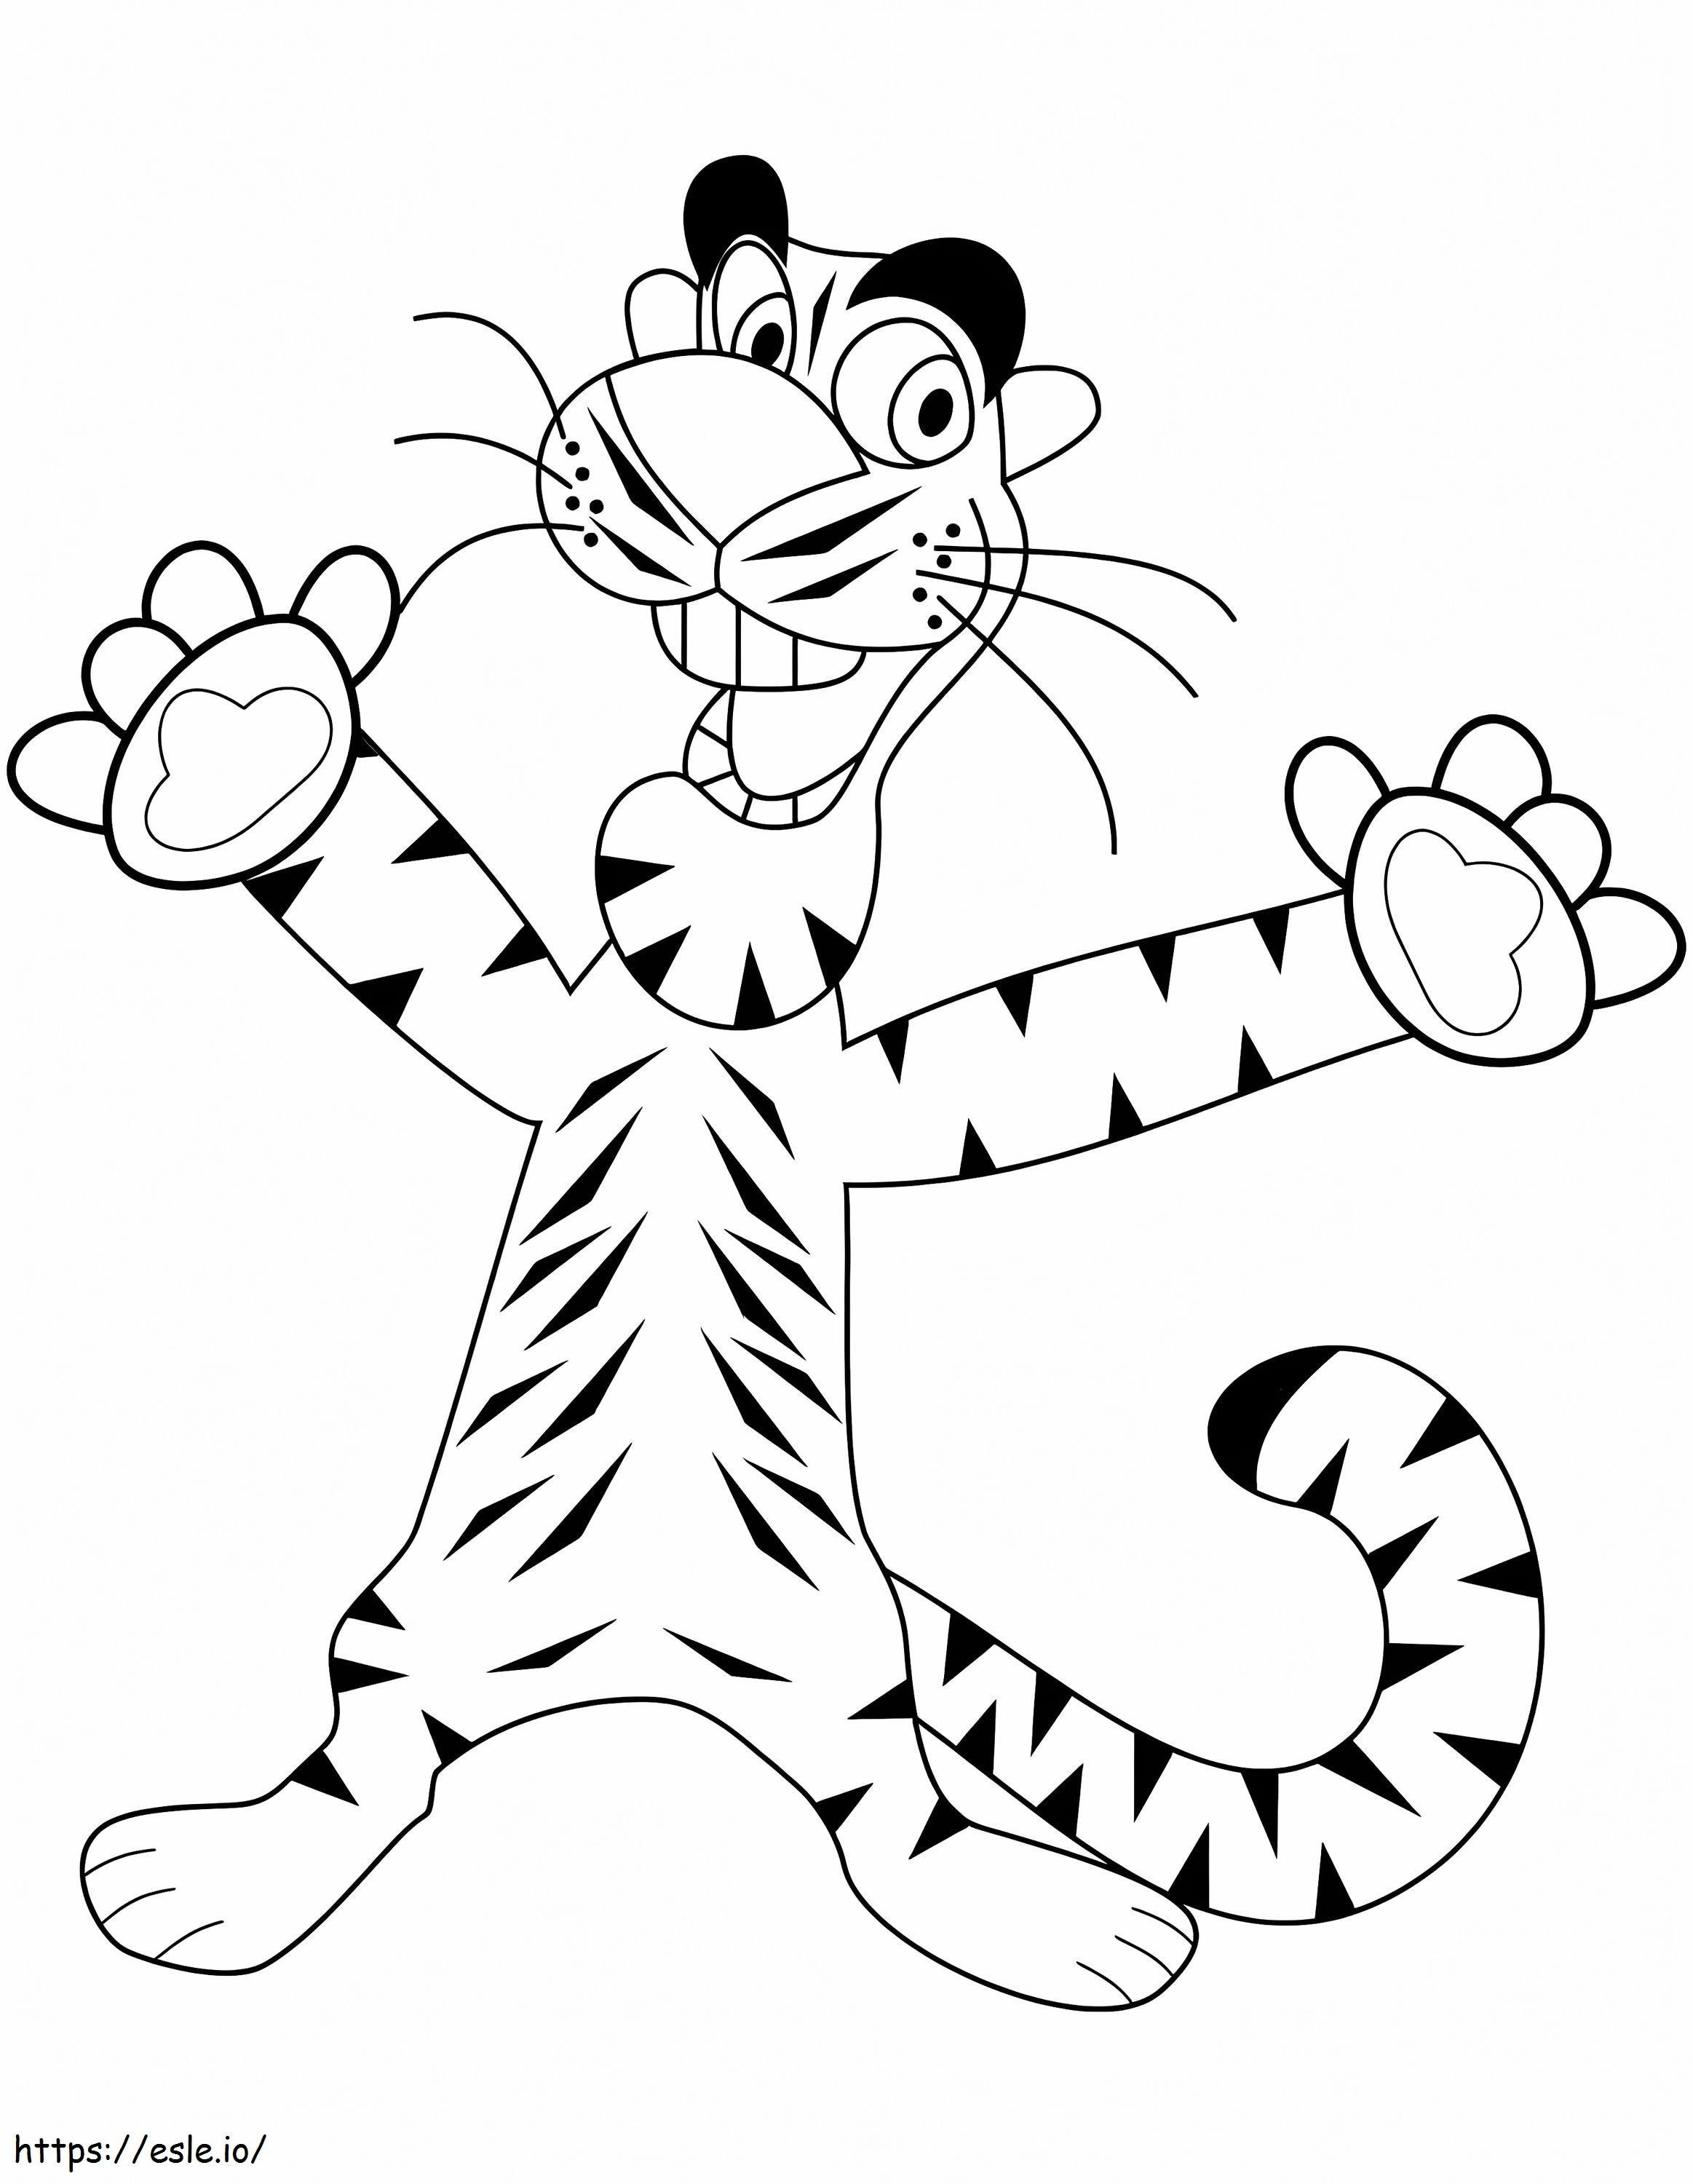 Tigre felice del fumetto da colorare